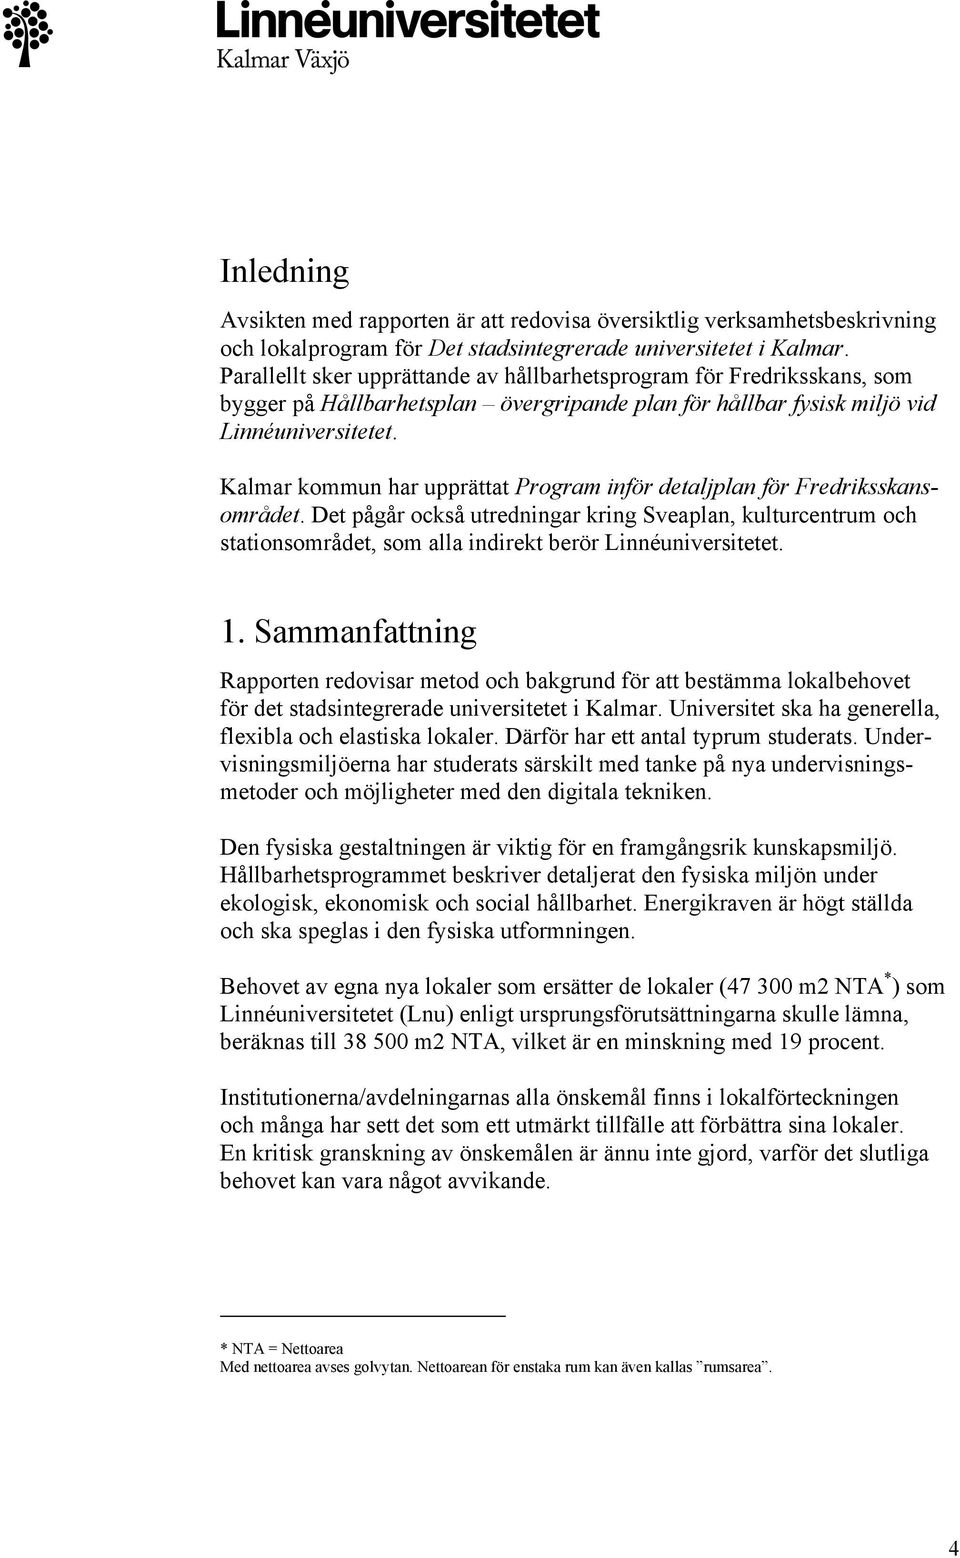 Kalmar kommun har upprättat Program inför detaljplan för Fredriksskansområdet.